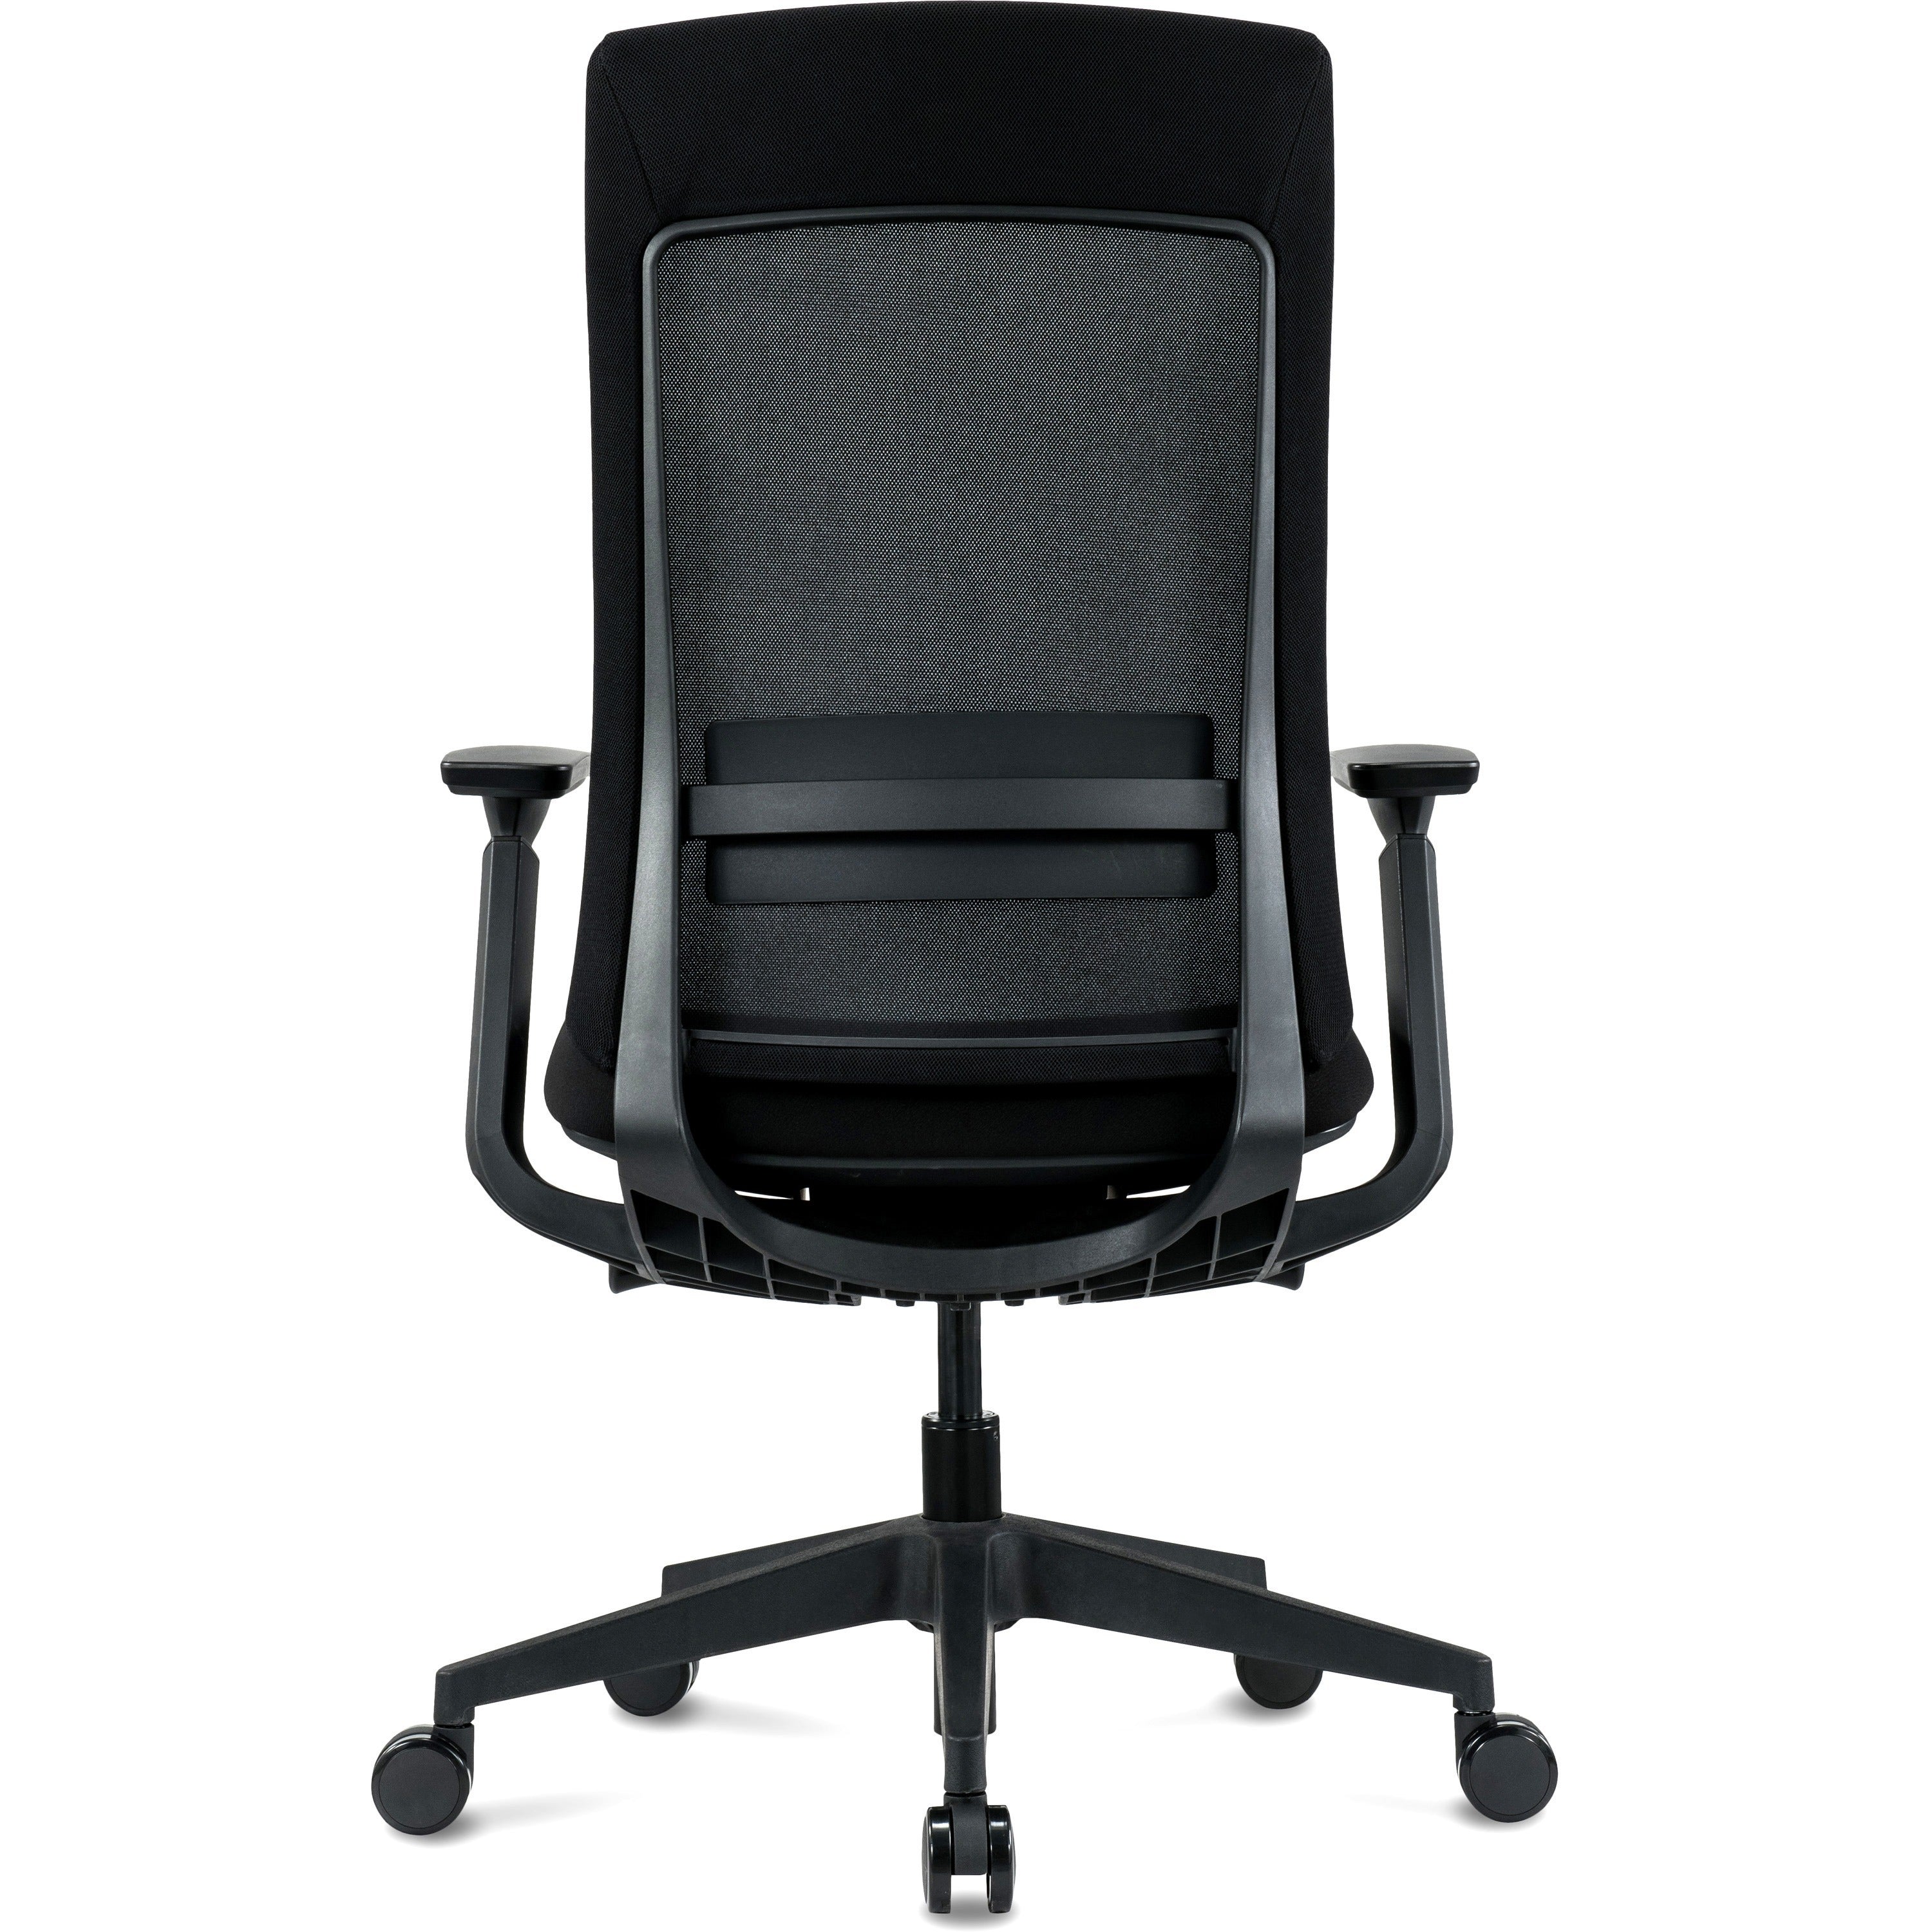 eurotech-elevate-chair-black-fabric-seat-black-mesh-back-black-frame-5-star-base-armrest-1-each_eutelv2blkfsblk - 3